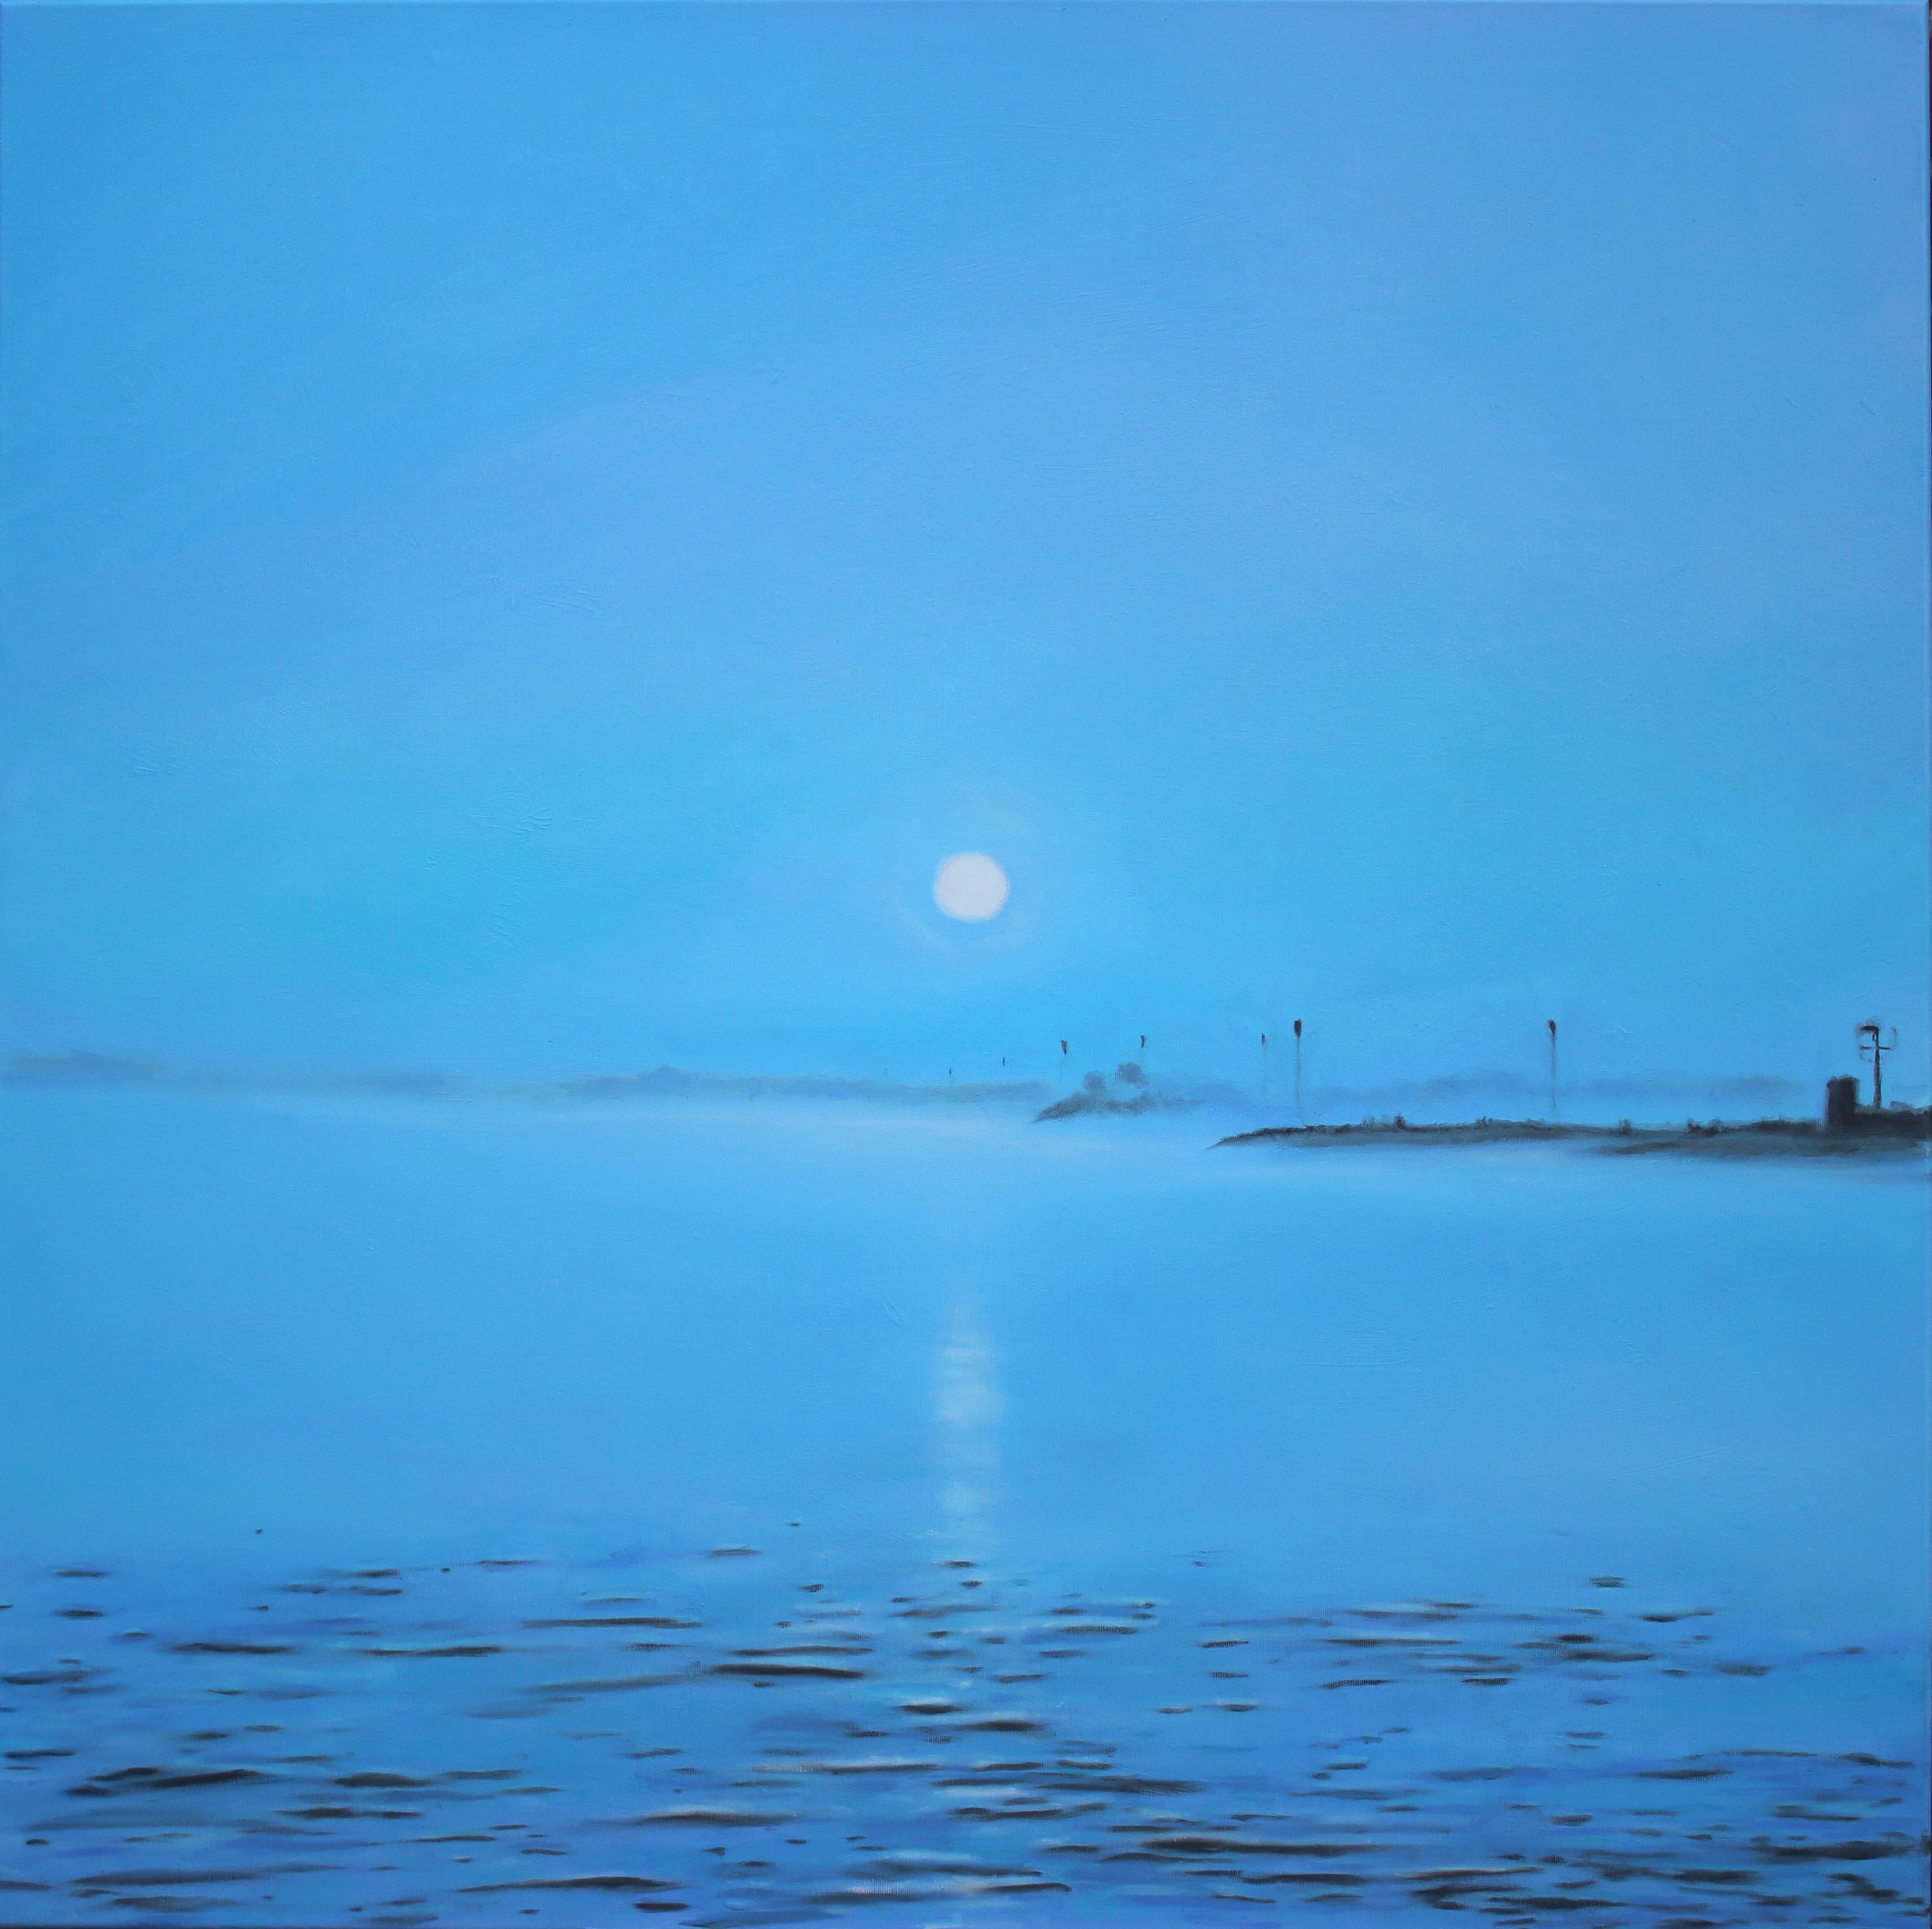 Michael Pröpper Figurative Painting – Elbe 17 - zeitgenössisches Kunstwerk, Wasserlandschaft Öl auf Leinwand in meditativem Blau